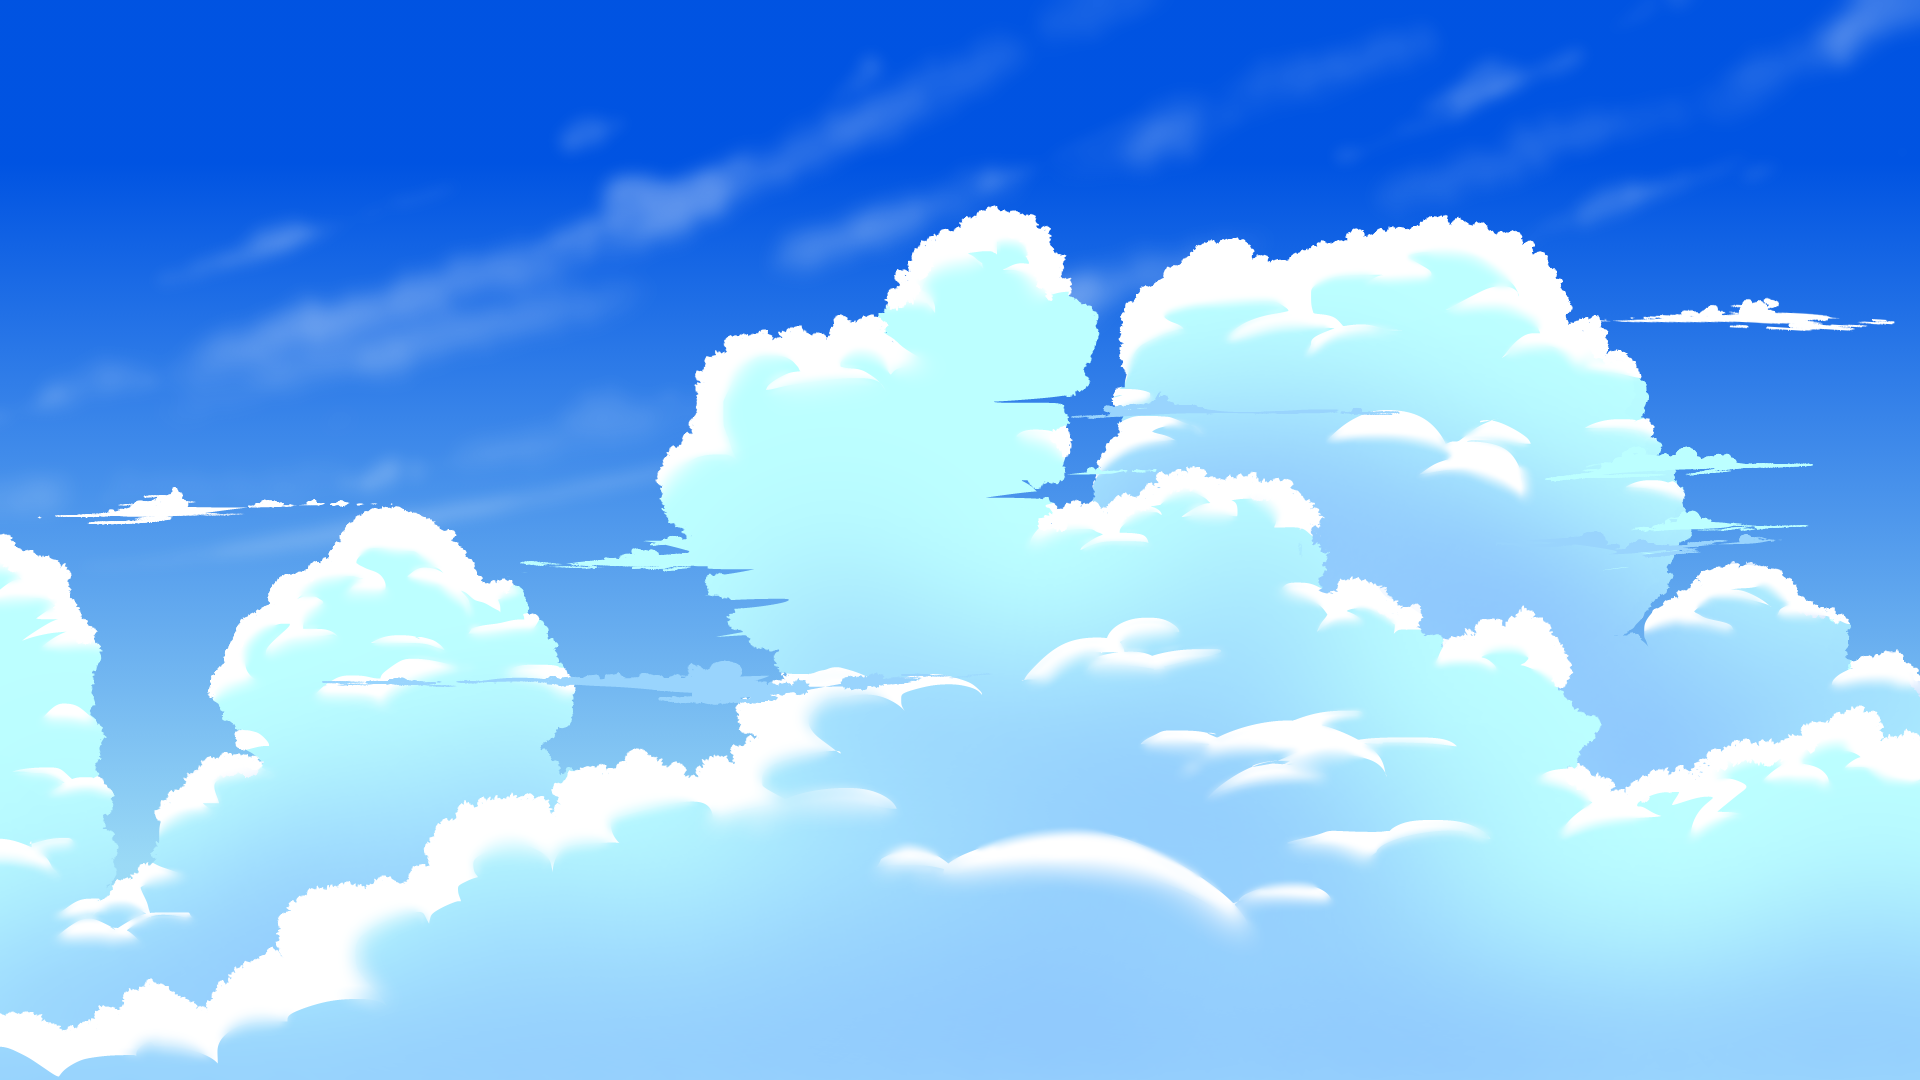 Mây nắng: Cảm nhận sự thư giãn, tươi vui tràn đầy năng lượng cùng hình ảnh pixel art về nền đầy mây nắng của CartoonCoffee, khiến người xem có cảm giác như đang ngắm nhìn một bức tranh ngoài trời thật sự.